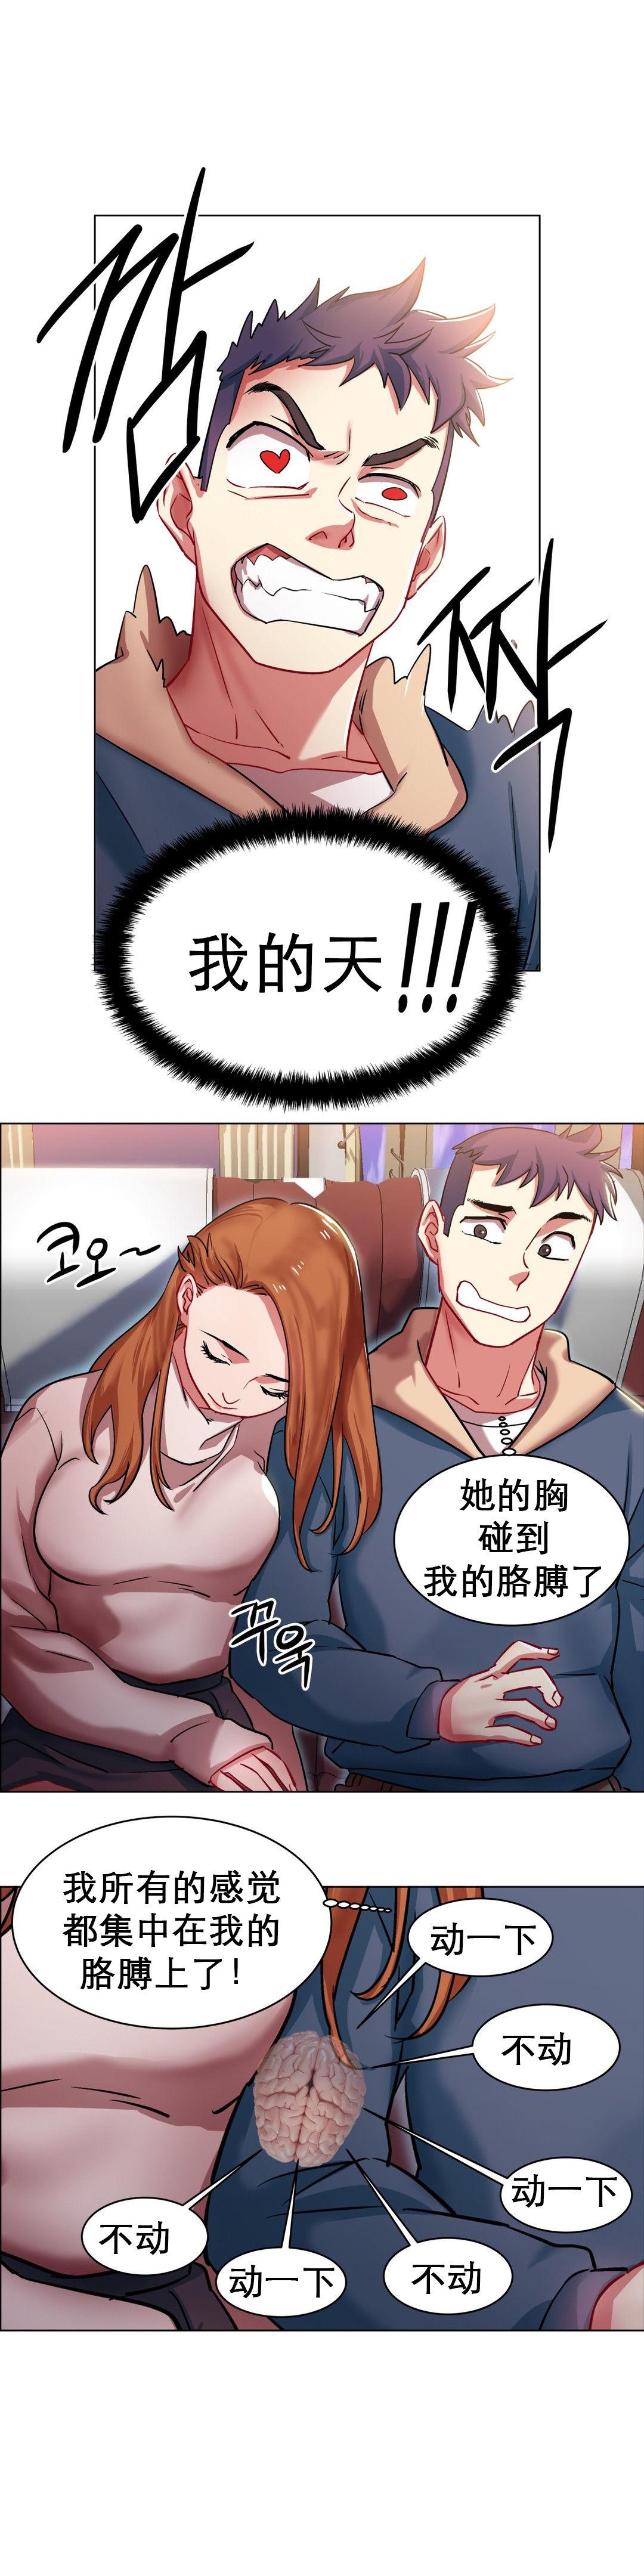 rental girls AV租片女郎 1-3 Chinese 46